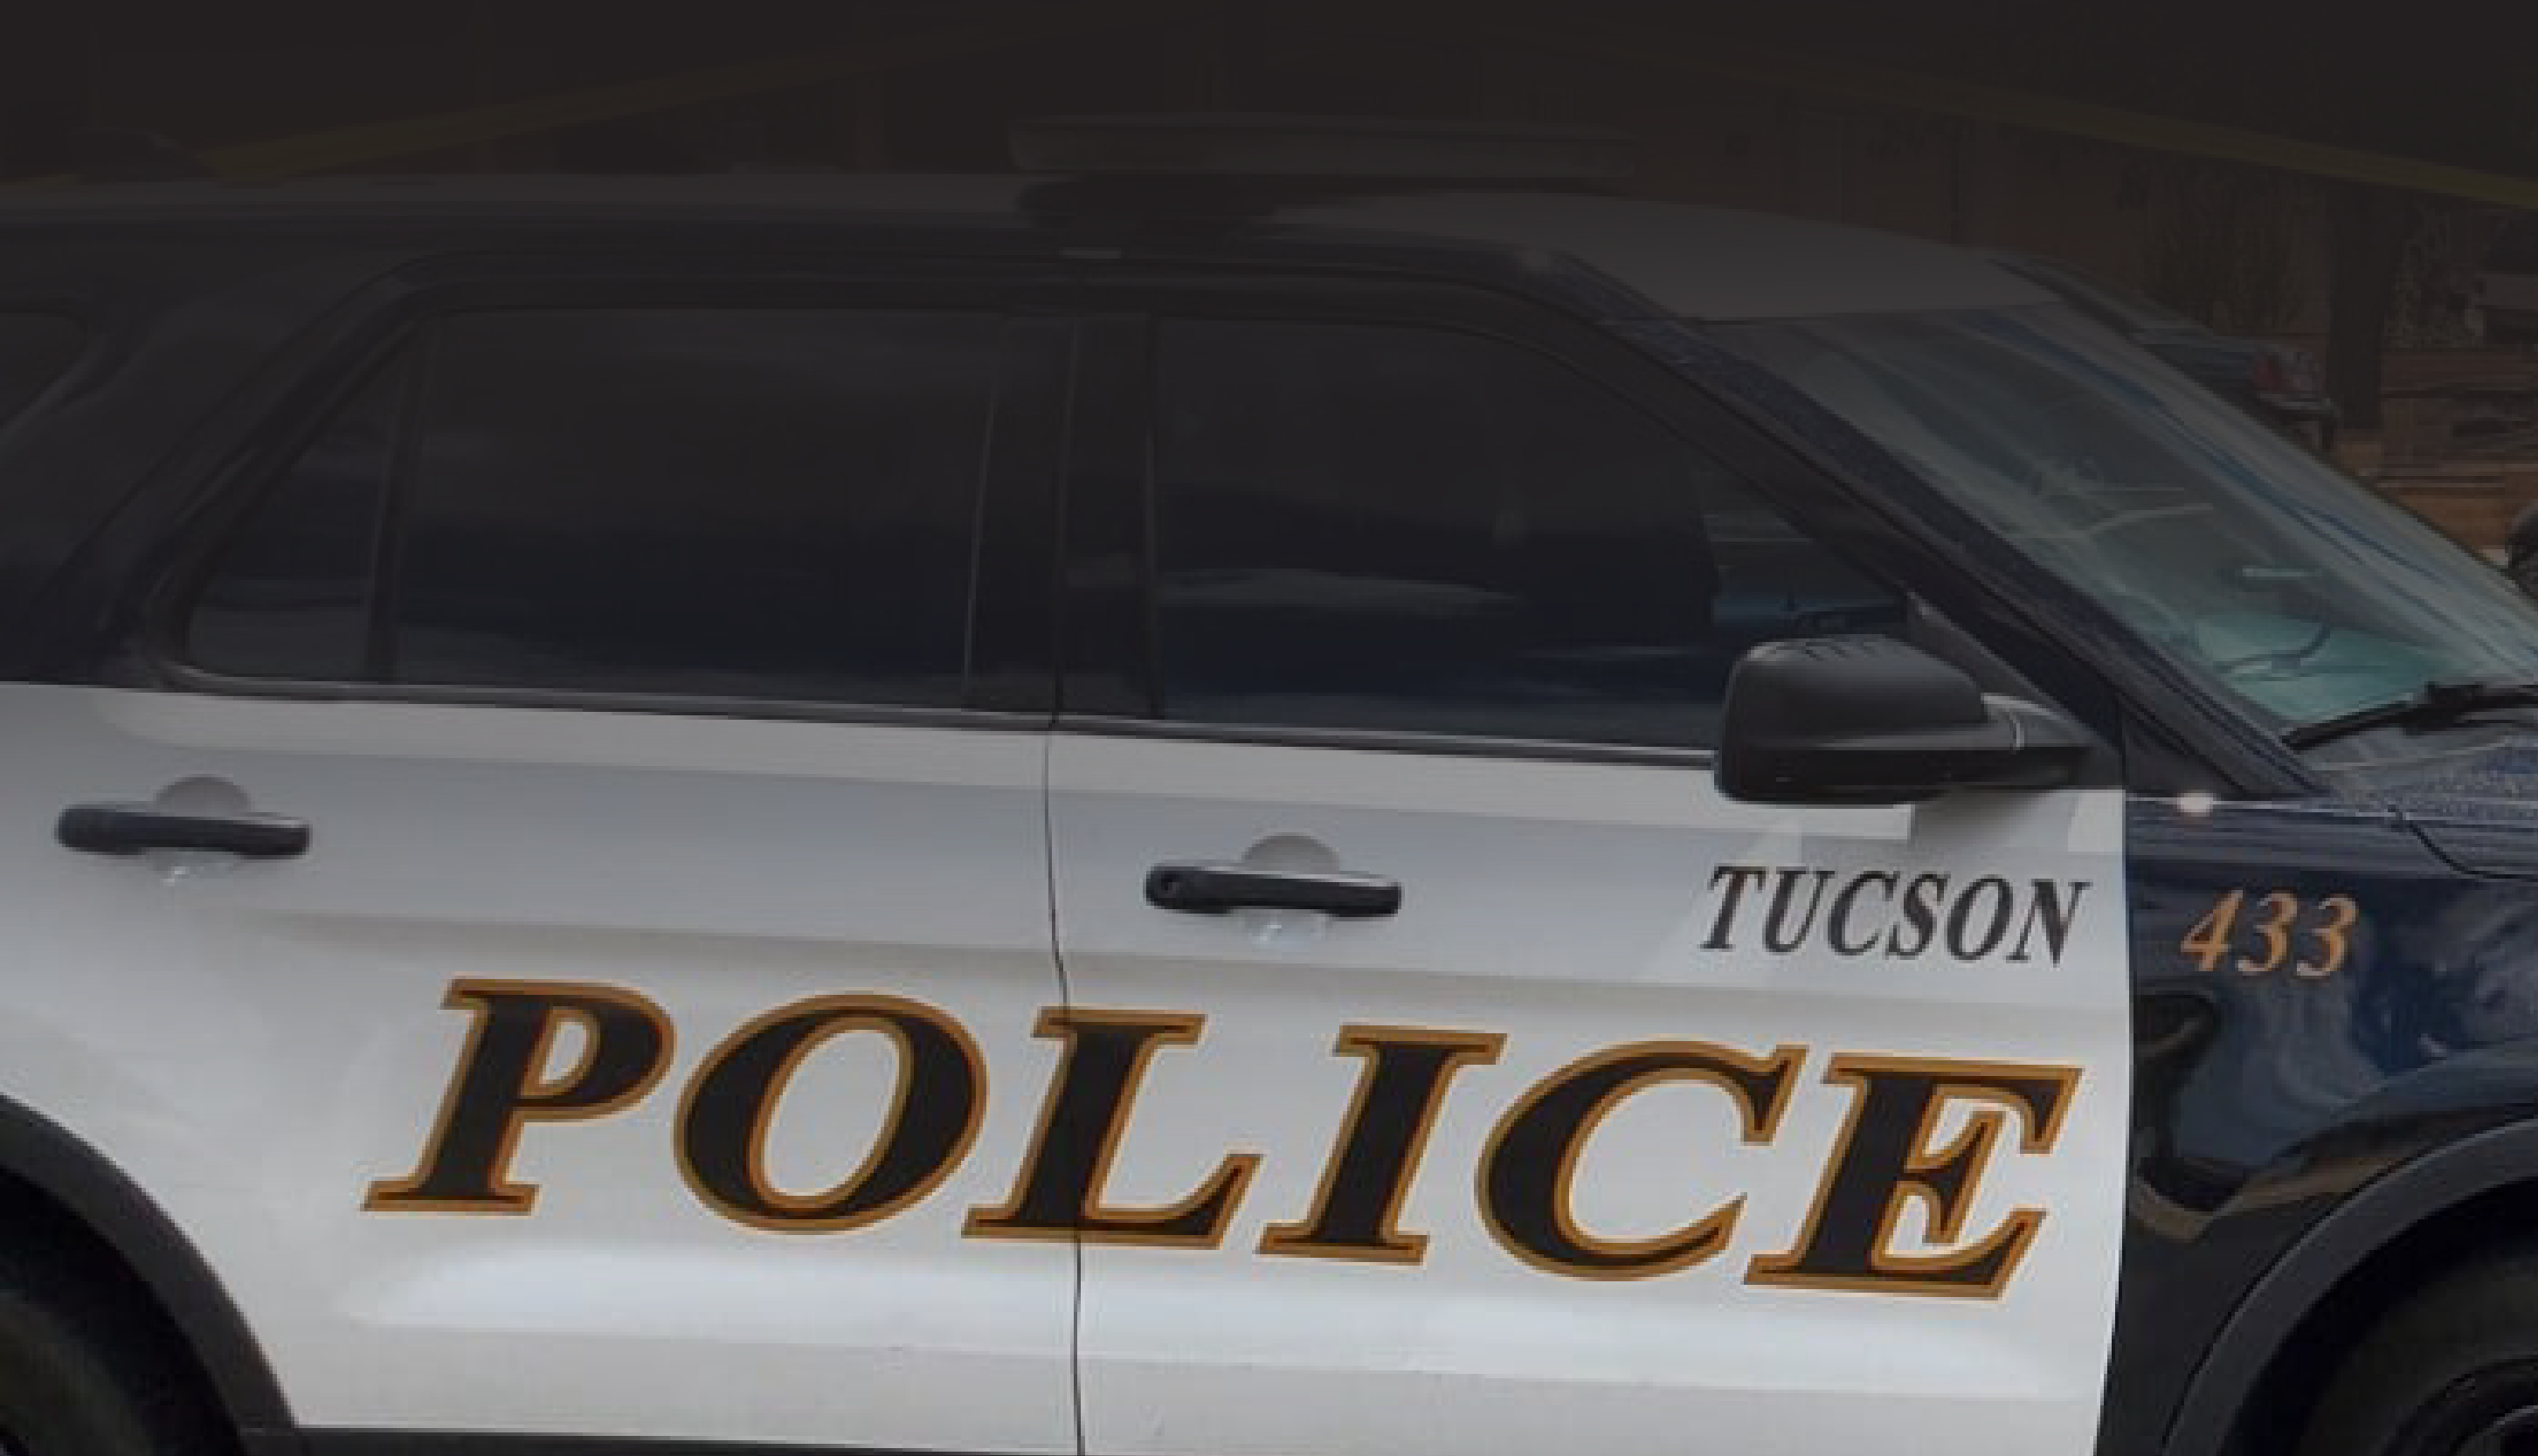 tucson police